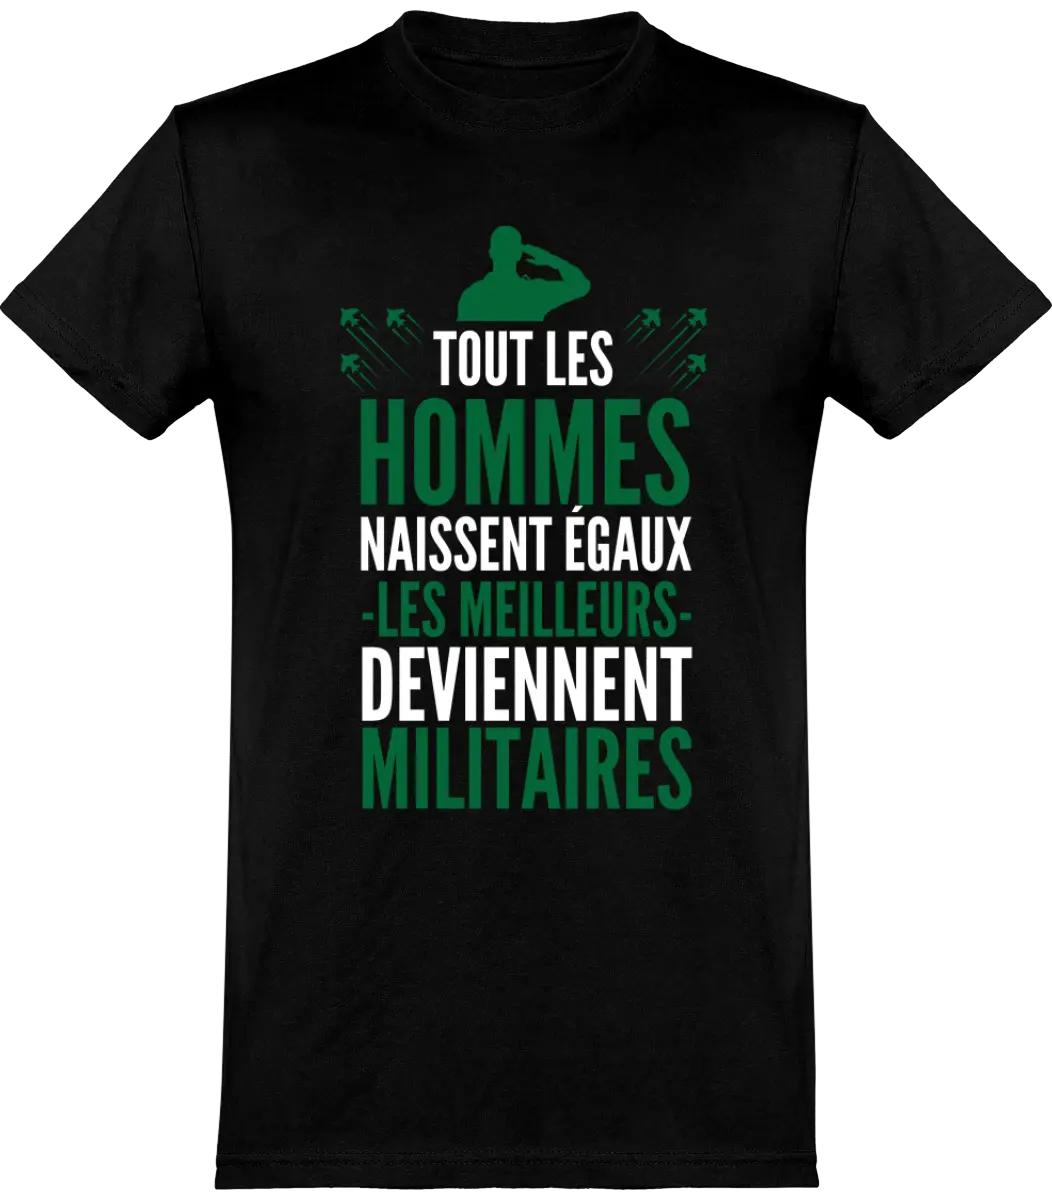 T-shirt Militaire "Tout les hommes naissent égaux les meilleurs deviennent militaires" | Mixte - French Humour